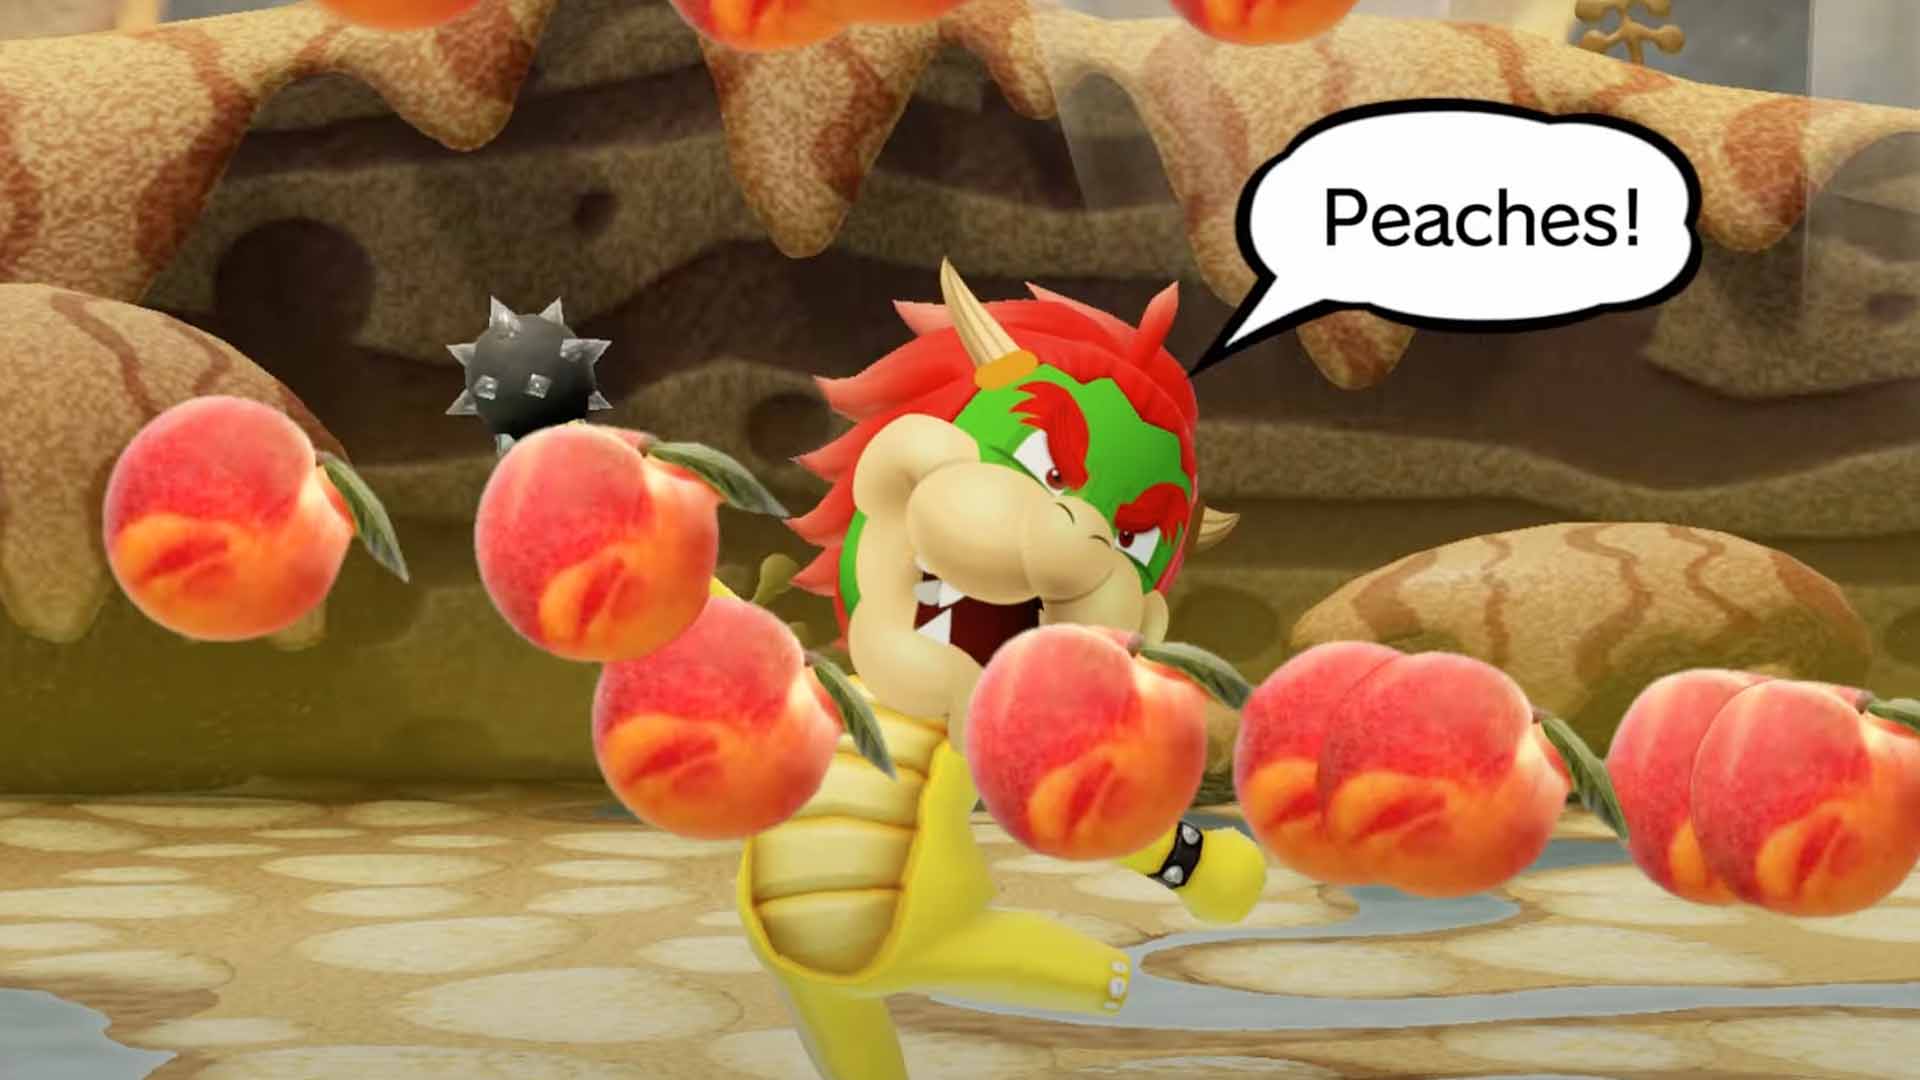 Peaches, a letra da música do Bowser no Filme do Super Mario